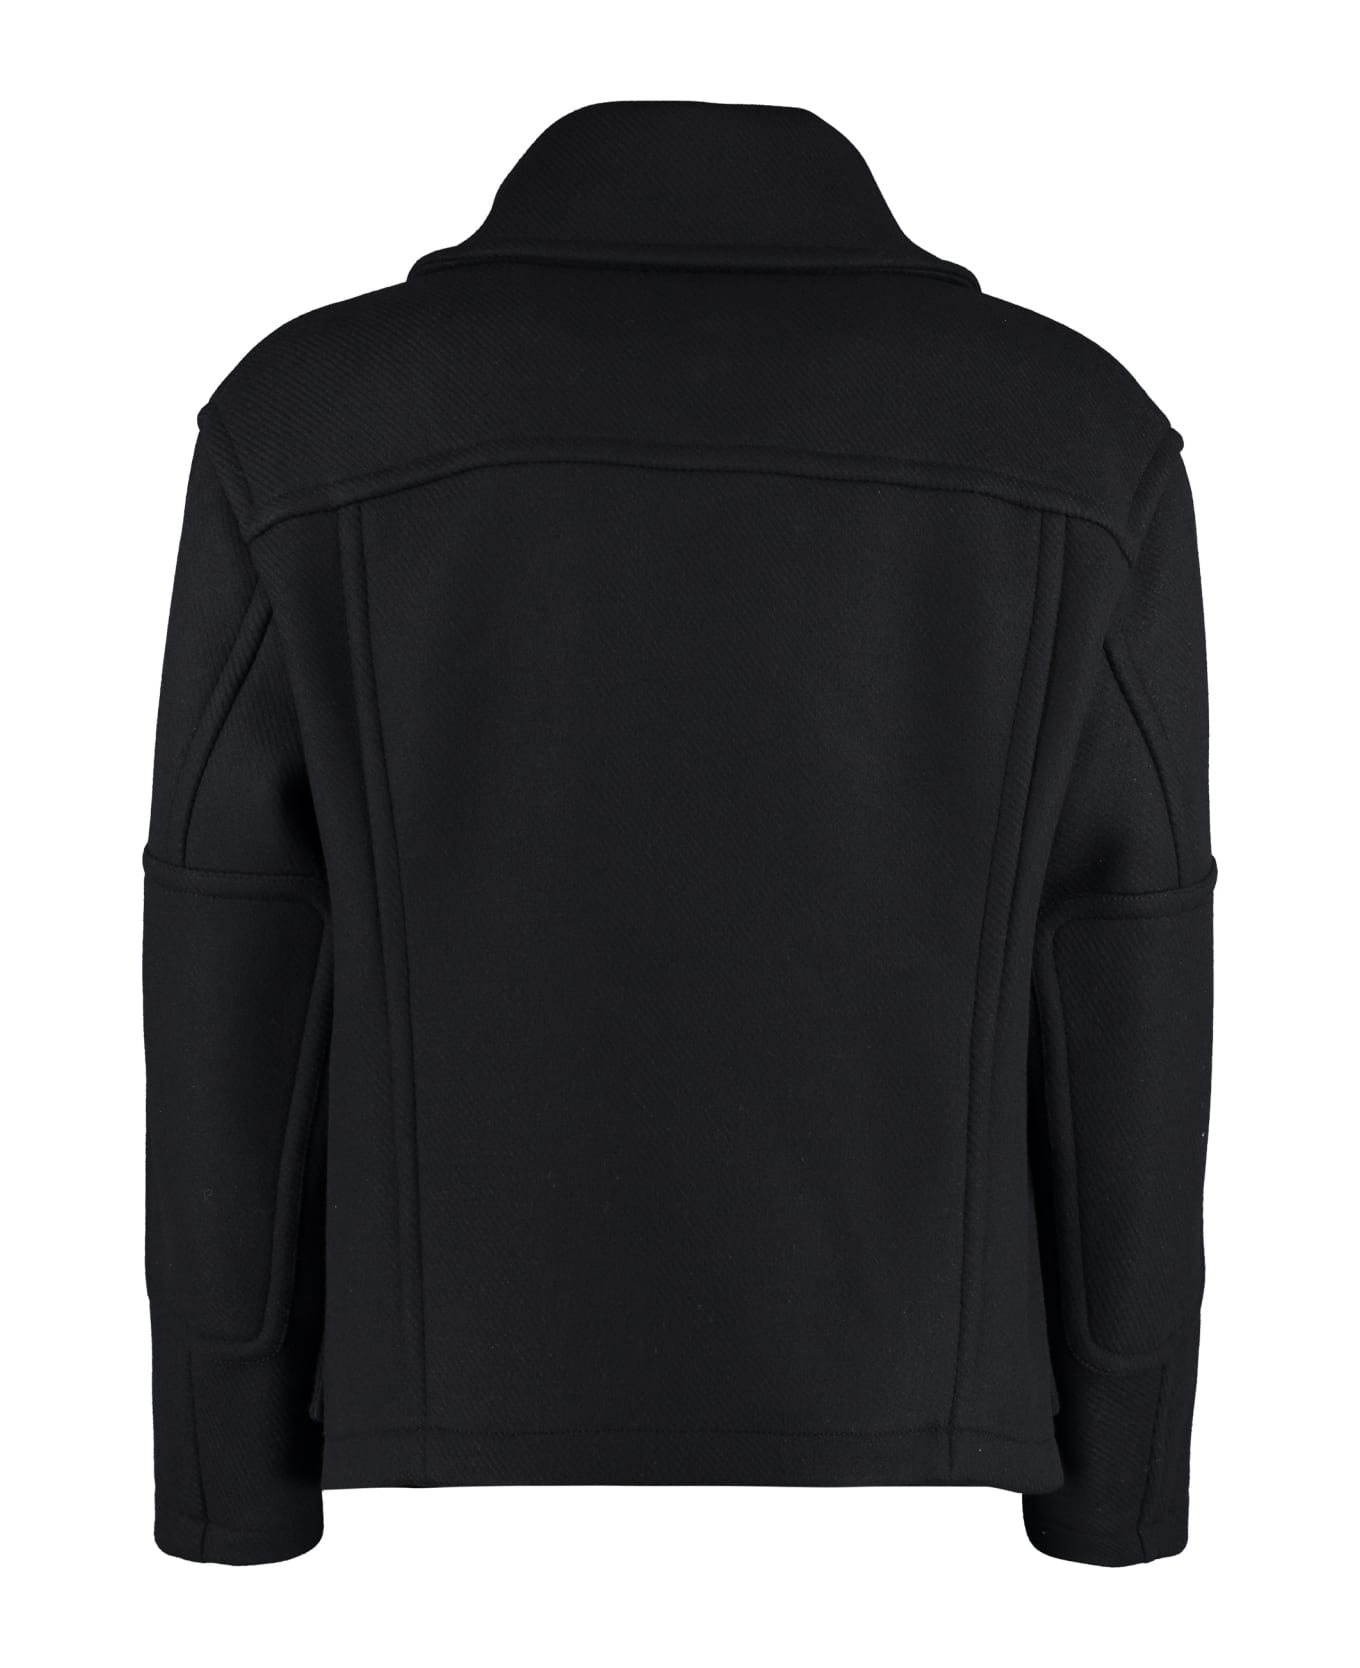 Versace Wool Blend Jacket - black